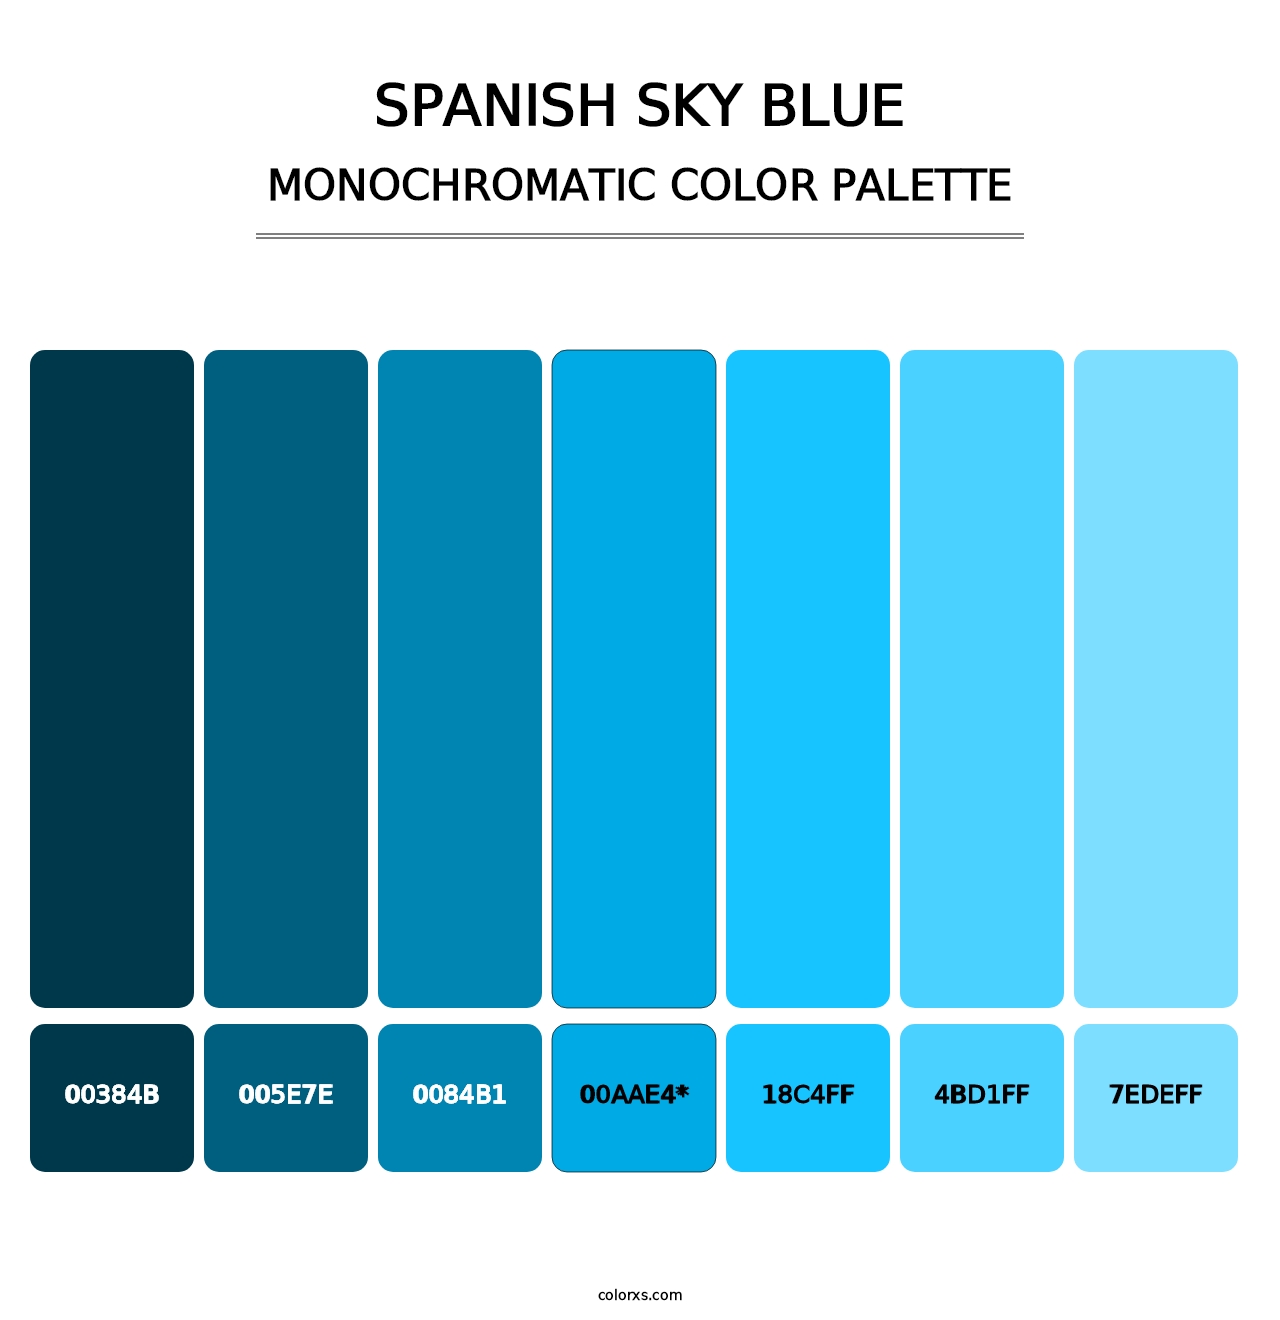 Spanish Sky Blue - Monochromatic Color Palette